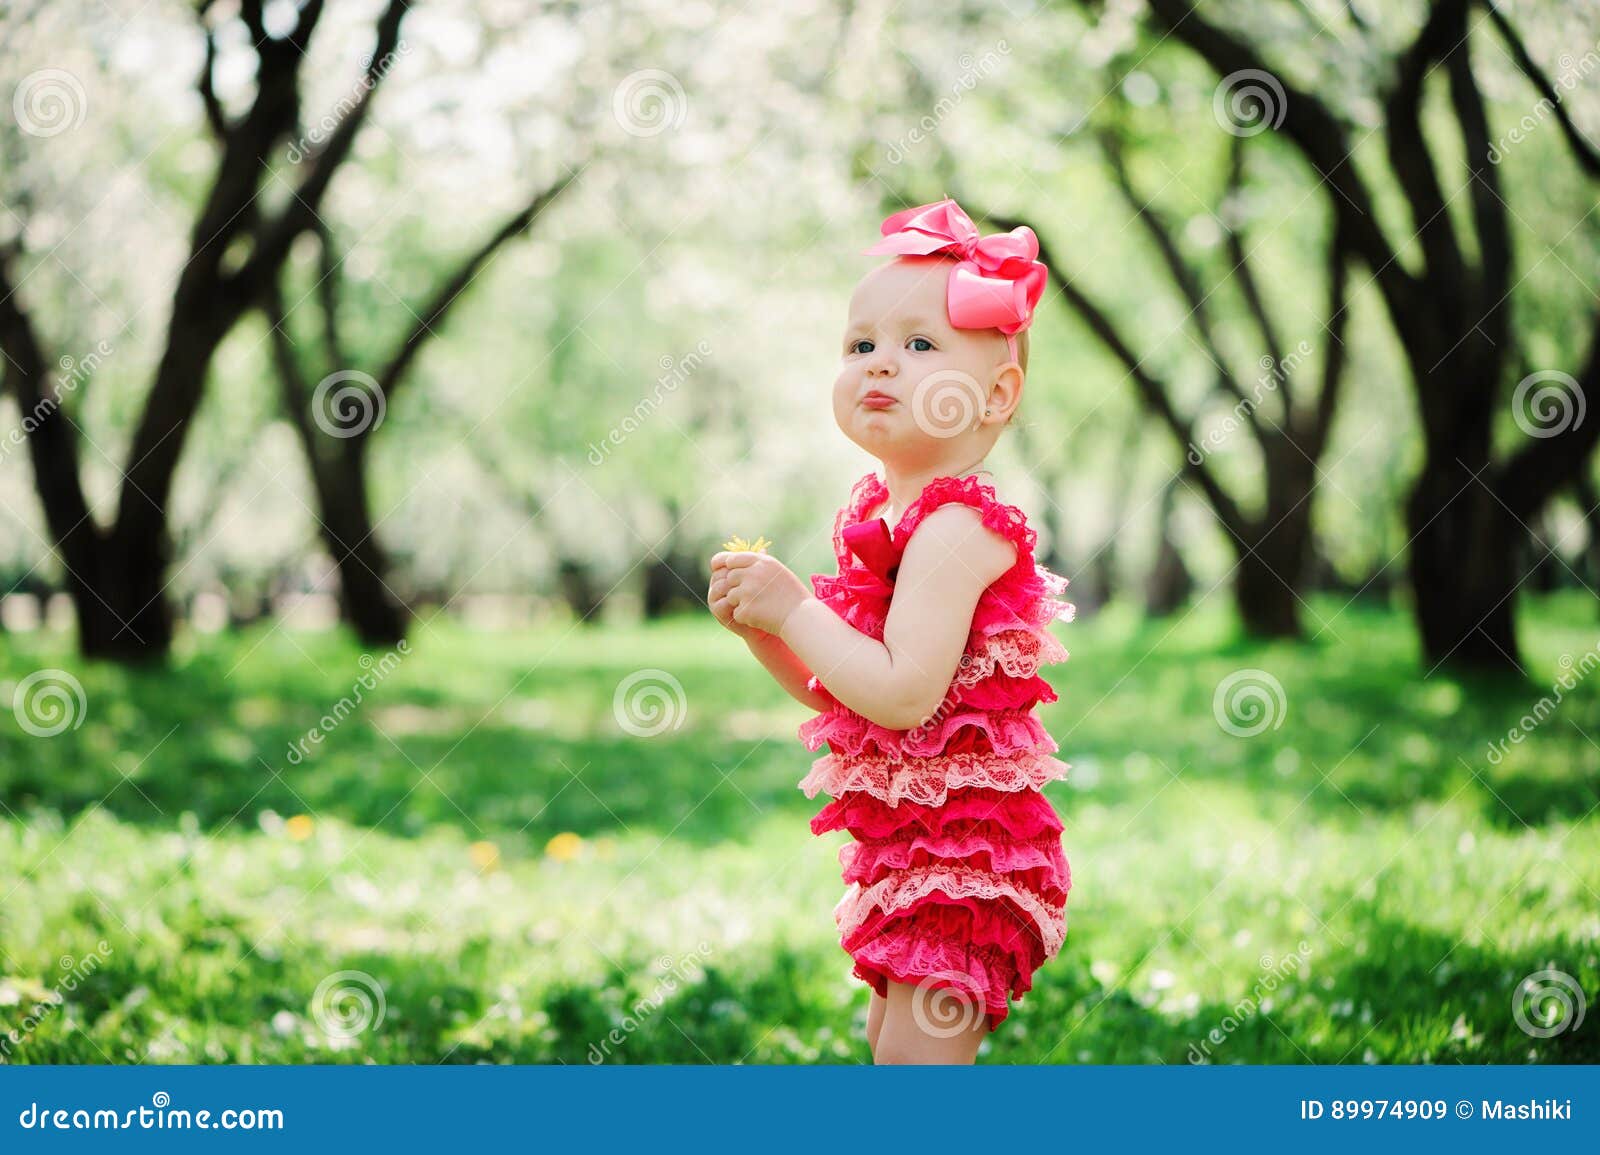 cute happy baby girl in funny pink romper walking outdoor in spring garden